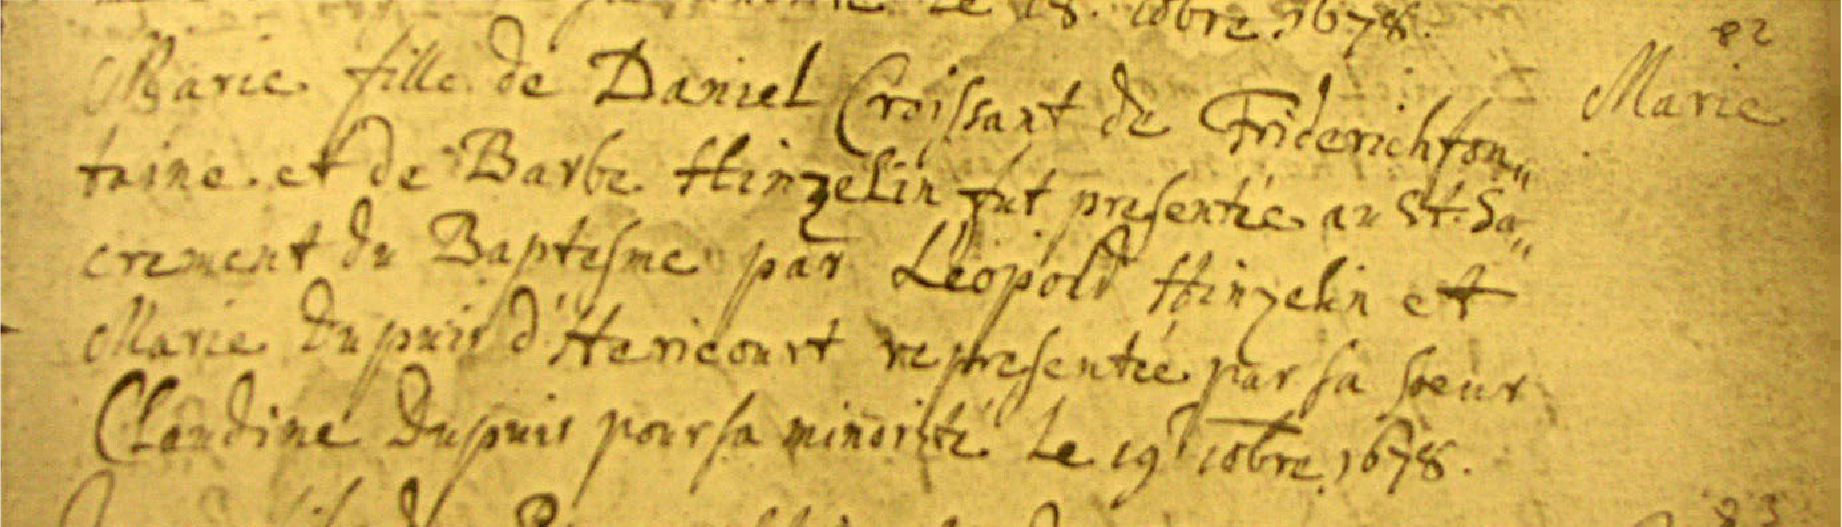 KEmuIZE3bfr_CROISSANT-Marie-Née-19-décembre-1678-à-Frédéric-Fontaine.jpg